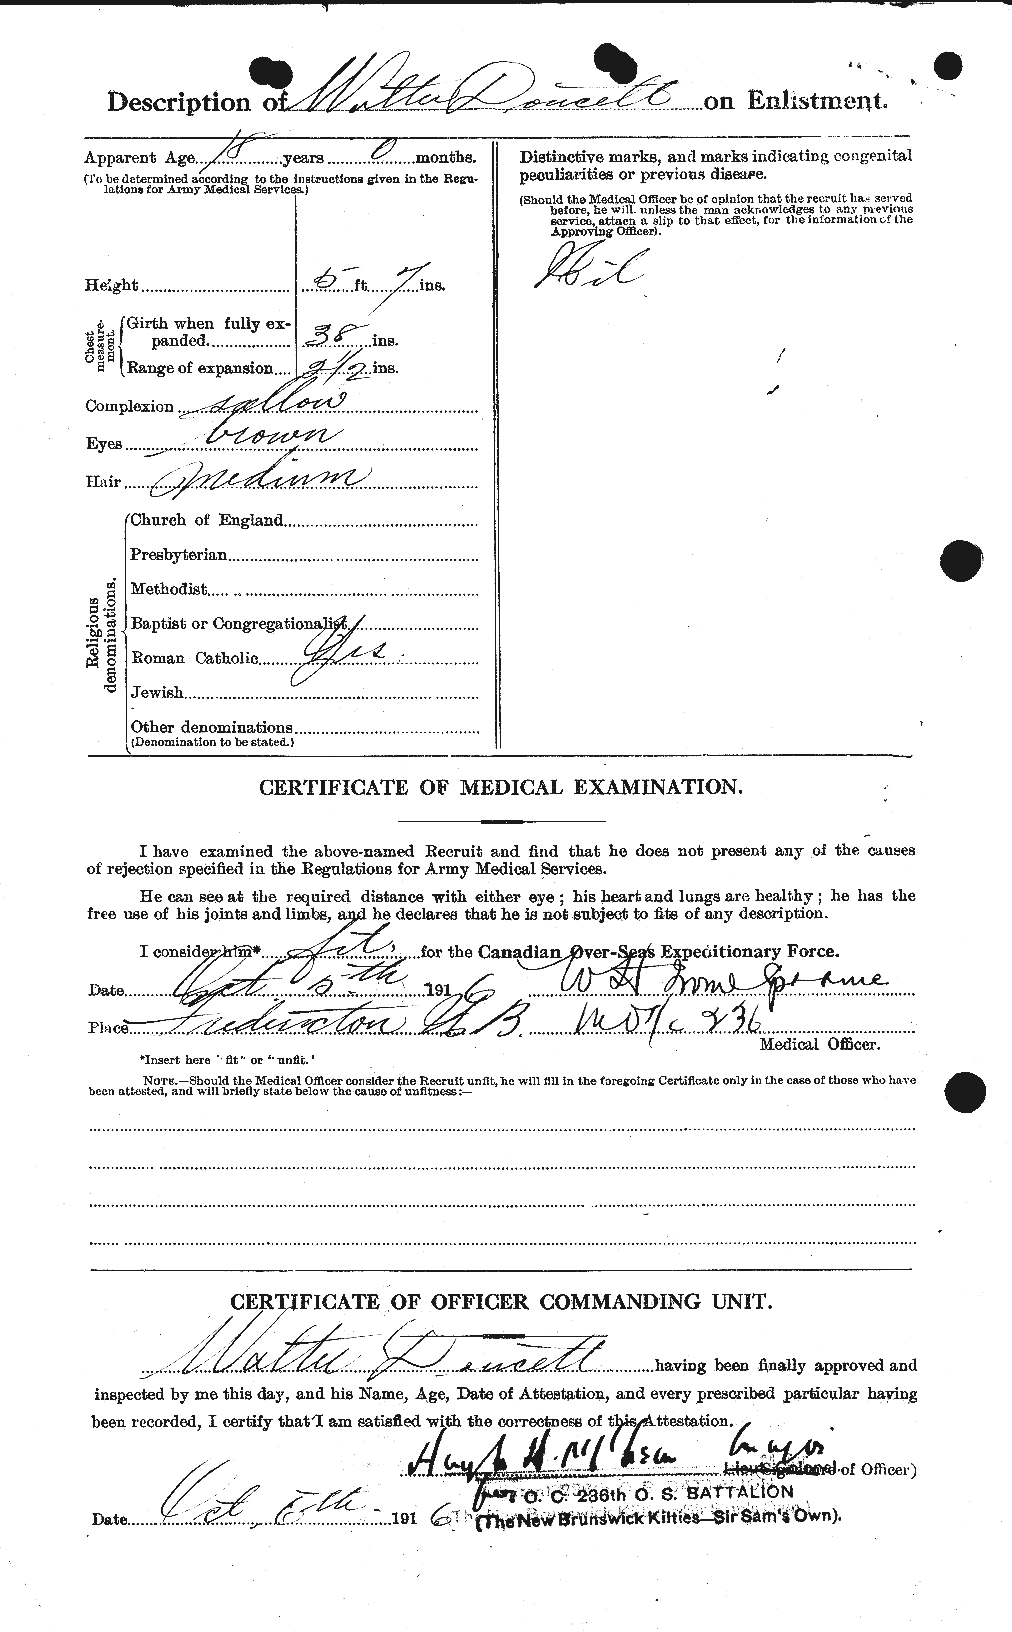 Dossiers du Personnel de la Première Guerre mondiale - CEC 301348b